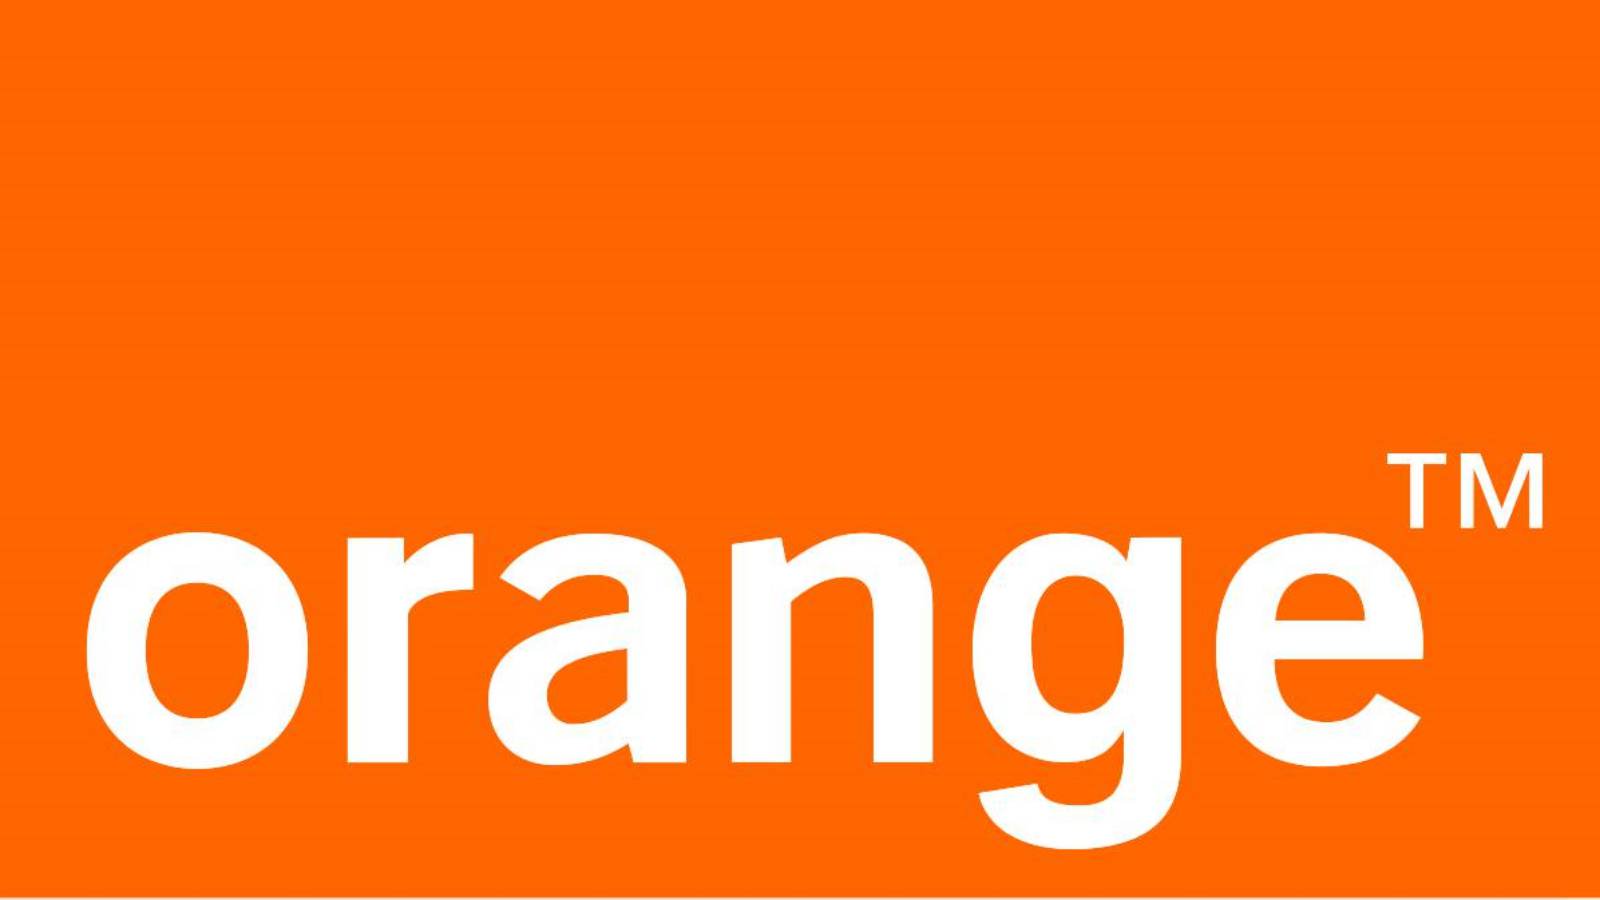 téléphones orange, prix réduit, 1er mai